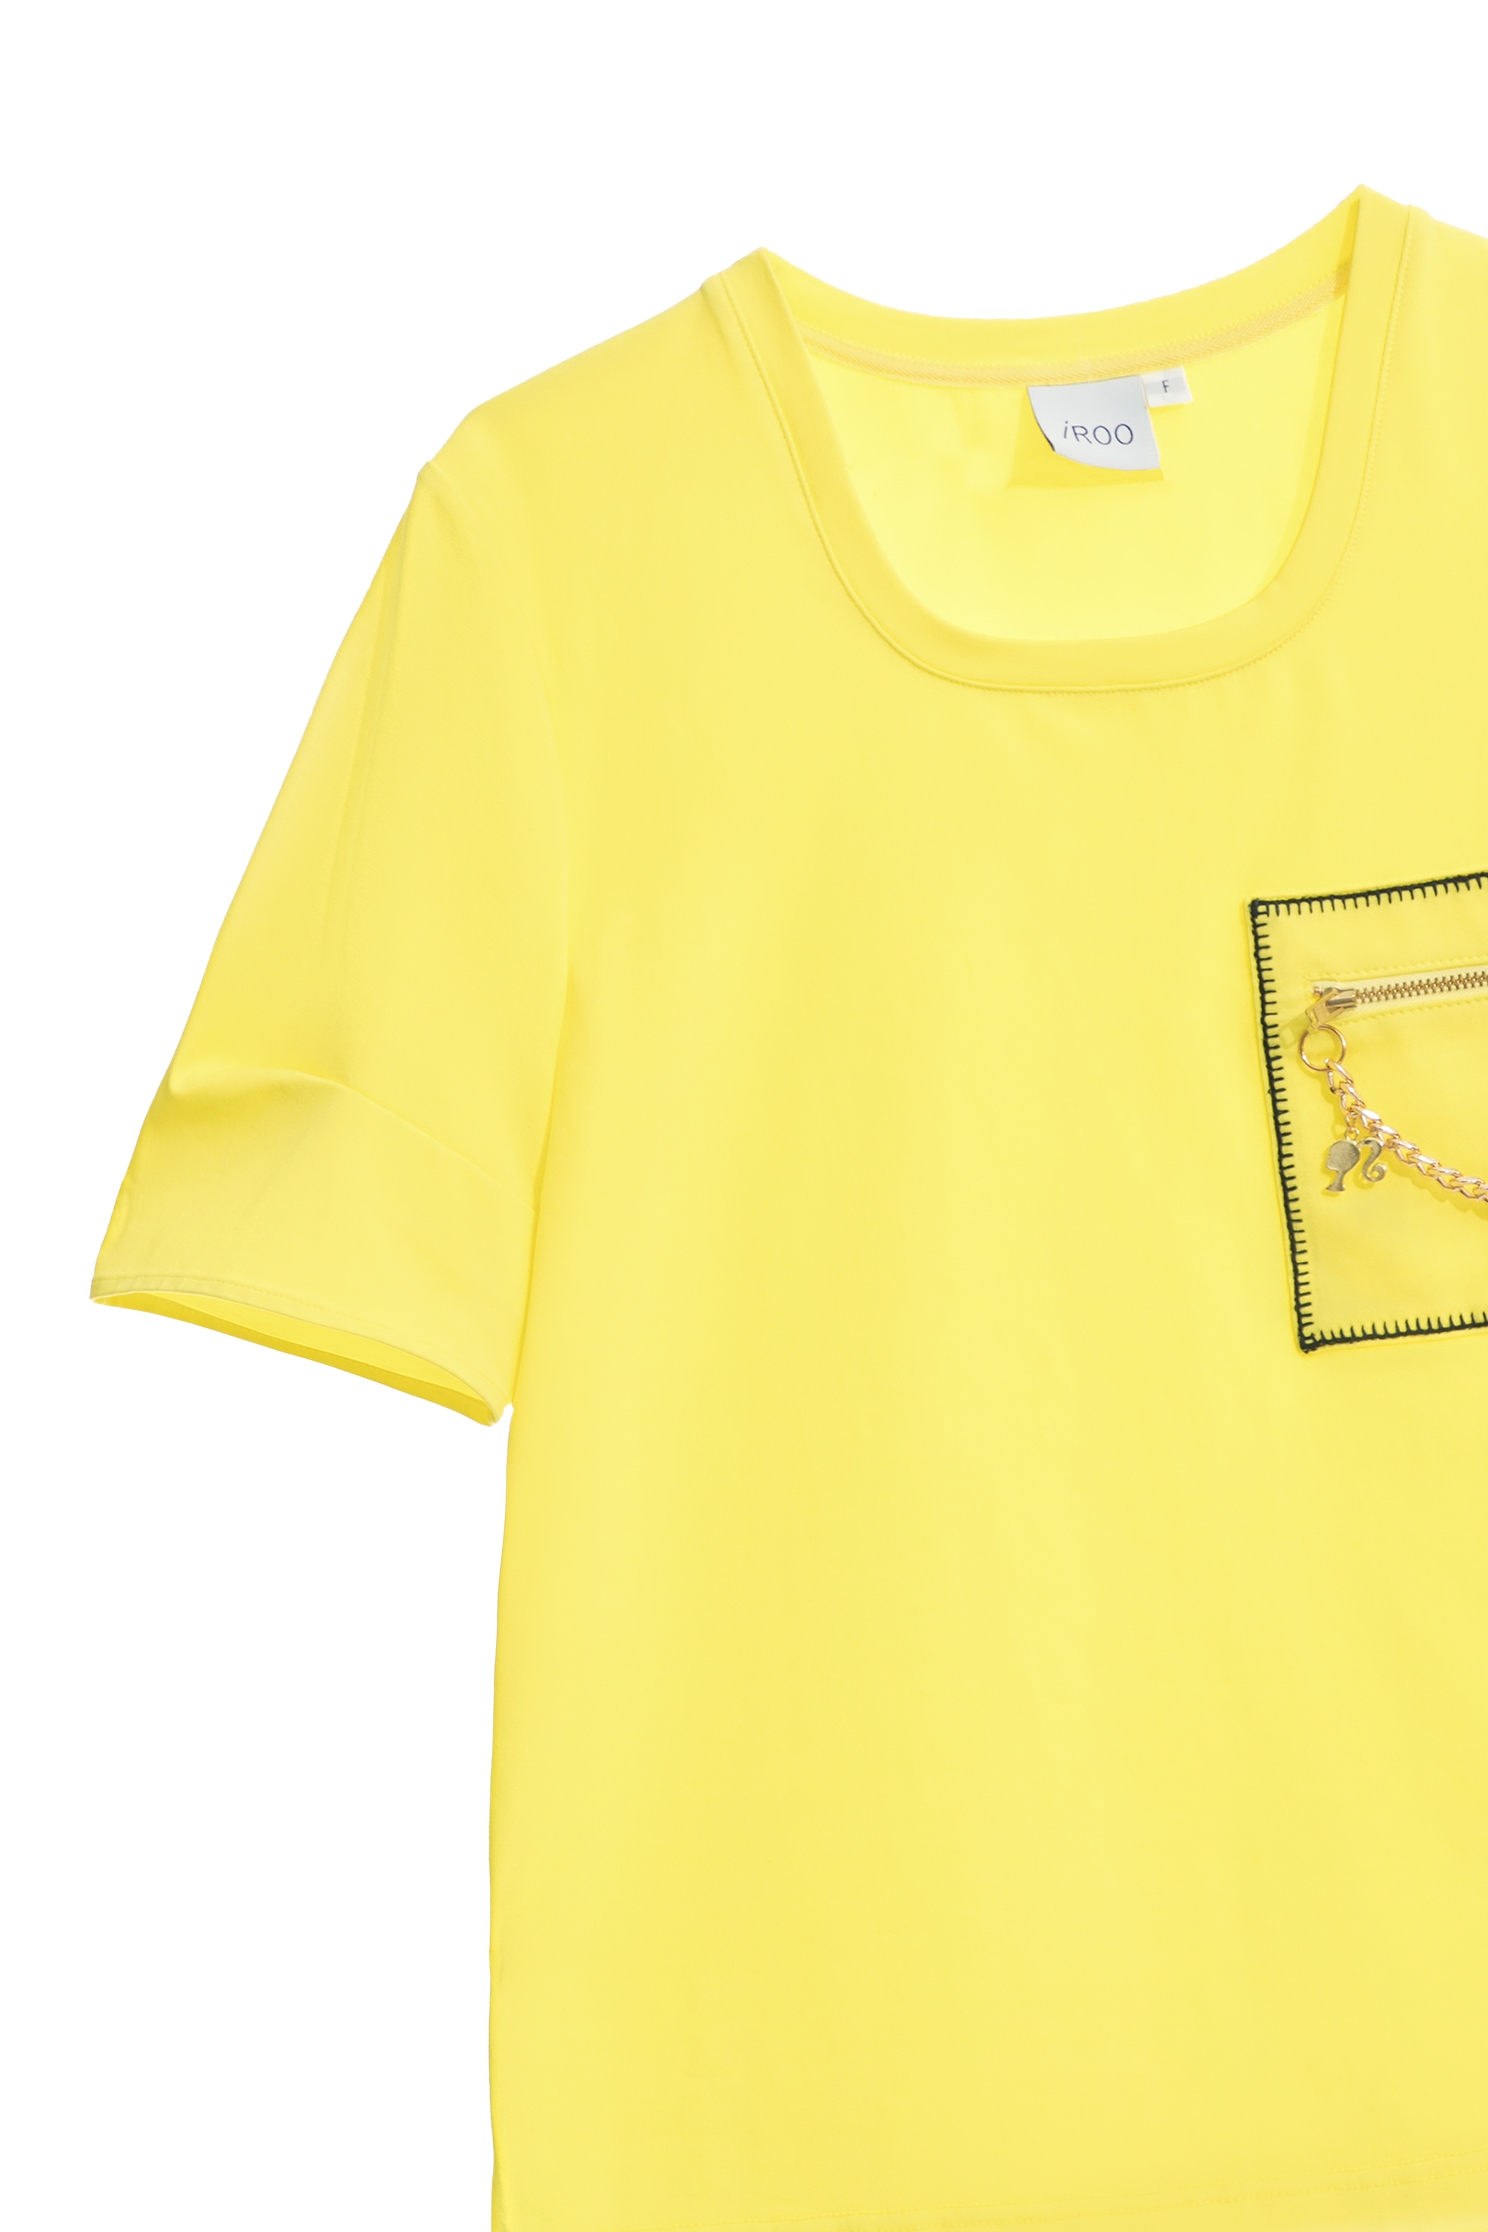 香蕉黃鏈飾口袋T恤上衣香蕉黃鏈飾口袋T恤上衣,T恤,上衣,人氣商品,刺繡,春夏穿搭